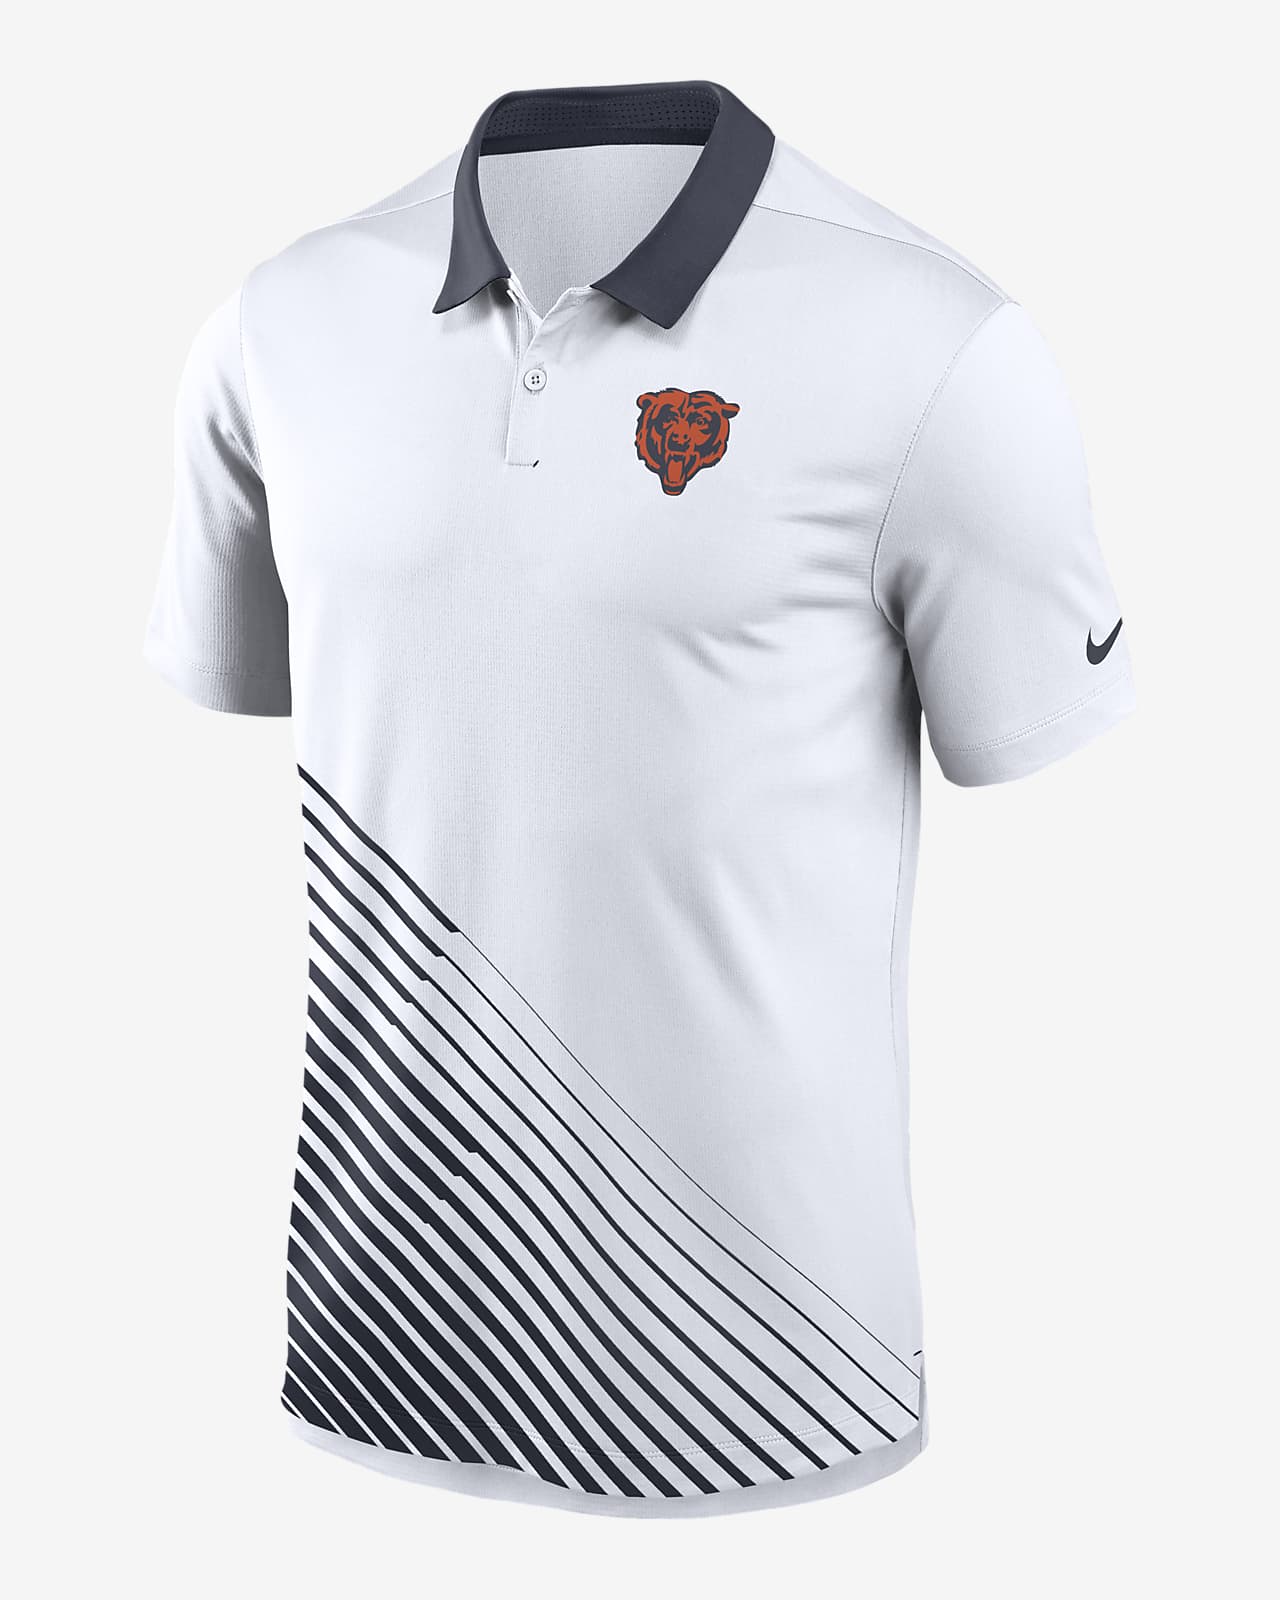 chicago bears golf shirt